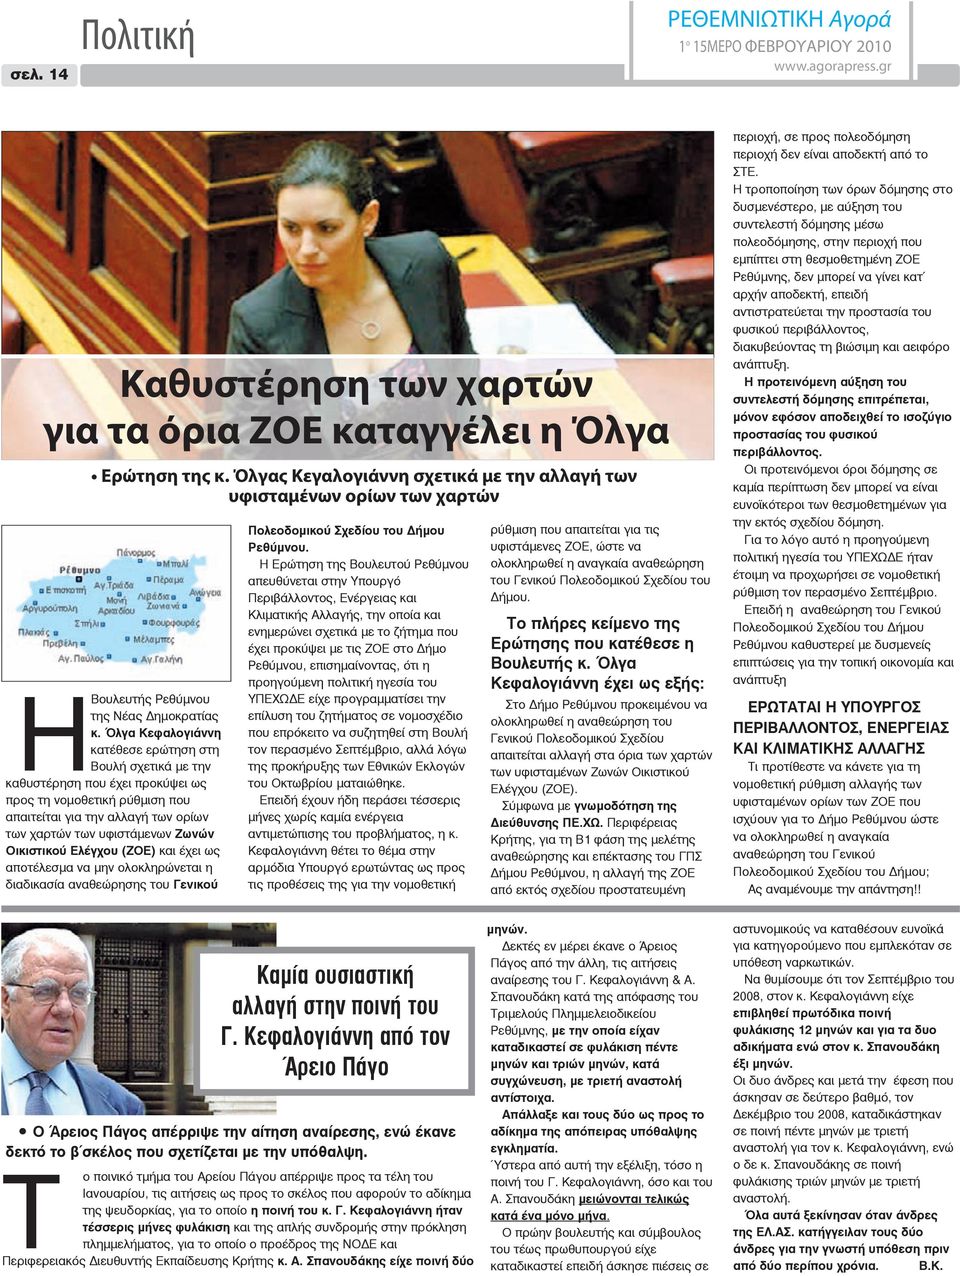 Όλγα Κεφαλογιάννη κατέθεσε ερώτηση στη Βουλή σχετικά με την καθυστέρηση που έχει προκύψει ως προς τη νομοθετική ρύθμιση που απαιτείται για την αλλαγή των ορίων των χαρτών των υφιστάμενων Ζωνών